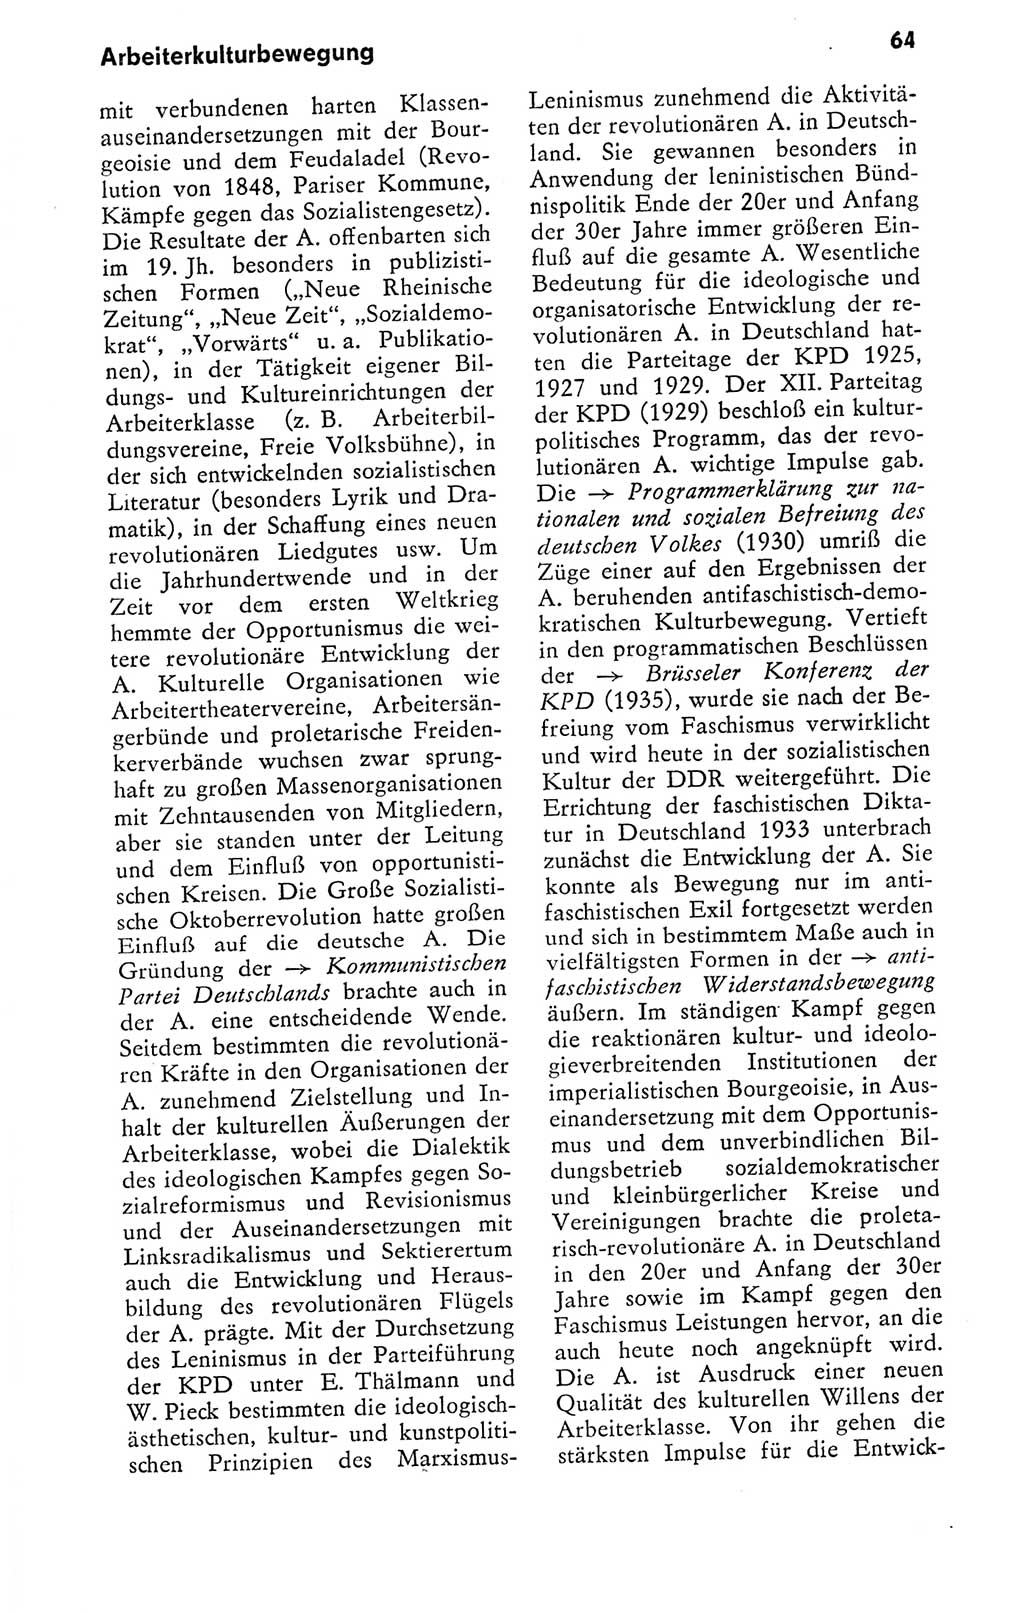 Kleines politisches Wörterbuch [Deutsche Demokratische Republik (DDR)] 1978, Seite 64 (Kl. pol. Wb. DDR 1978, S. 64)